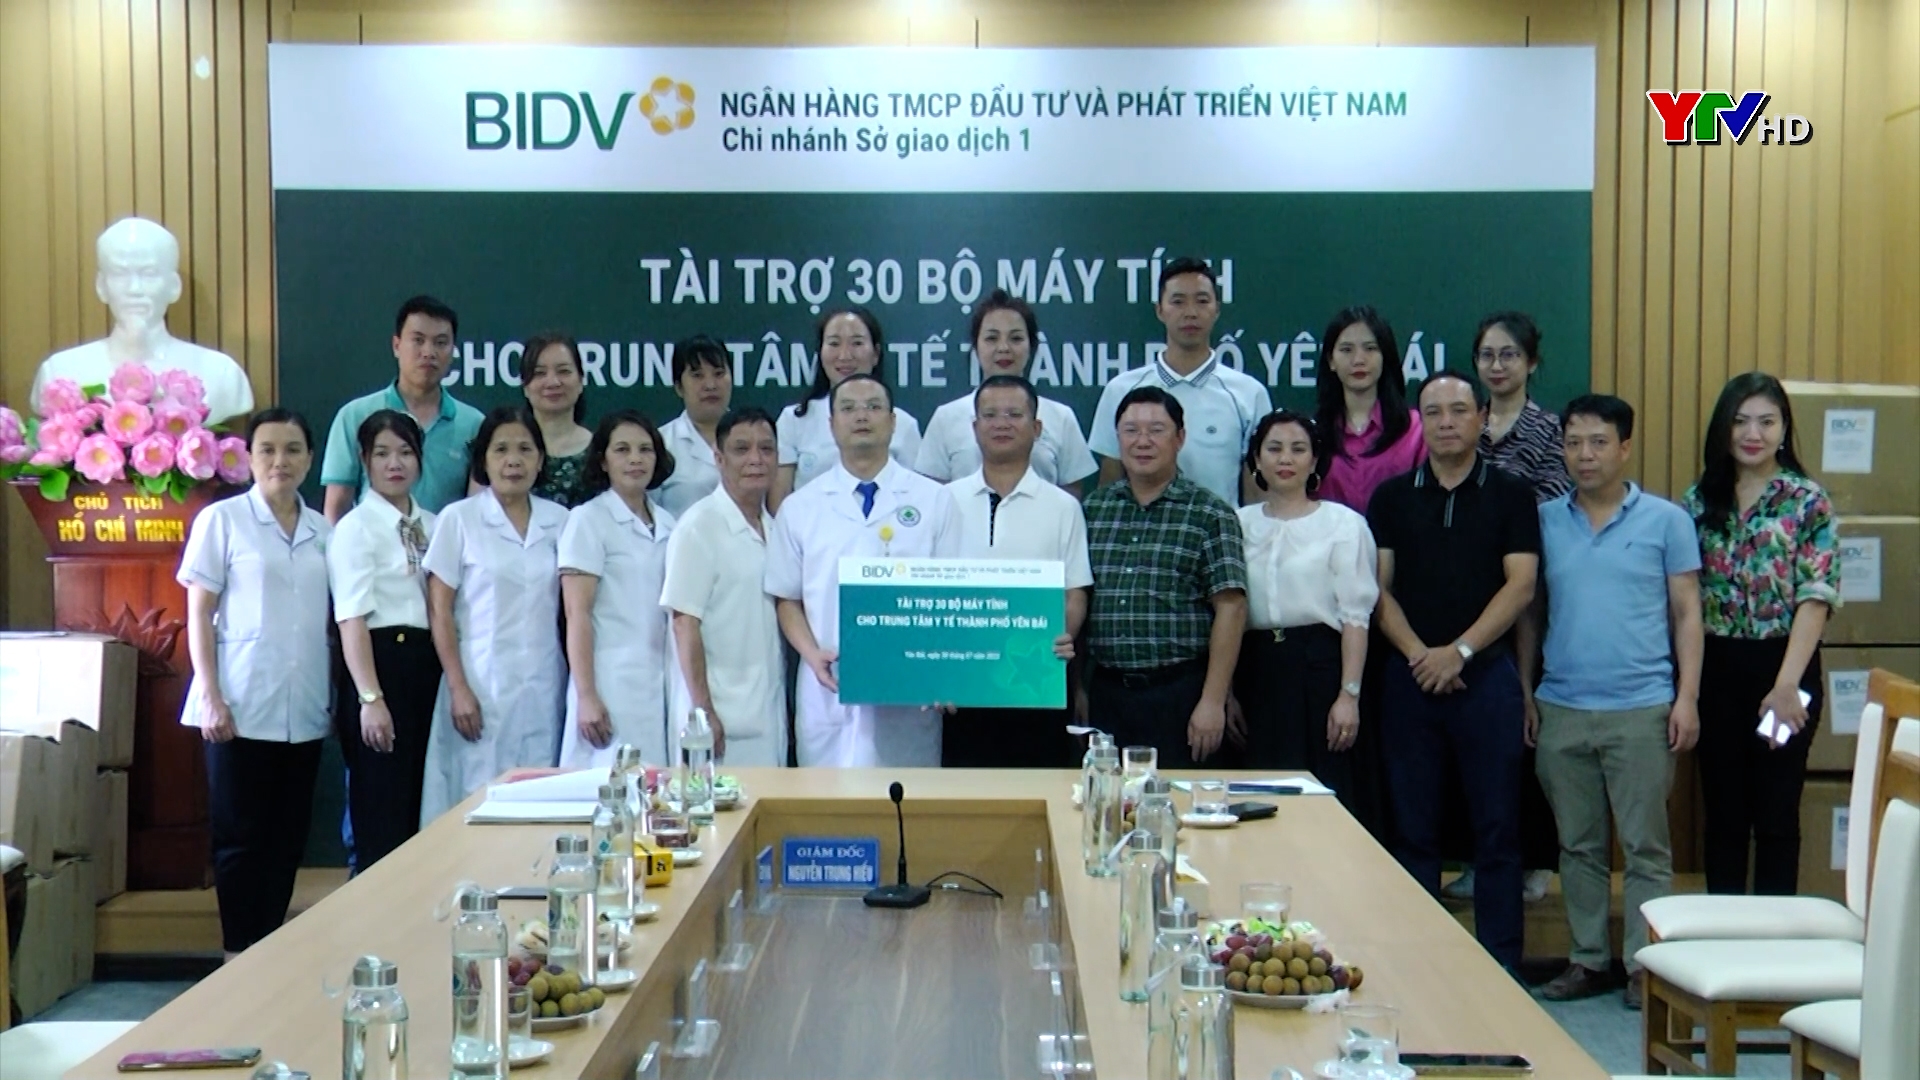 Chi nhánh BIDV Yên Bái Sở Giao dịch 1 tài trợ máy tính cho Trung tâm Y tế thành phố Yên Bái